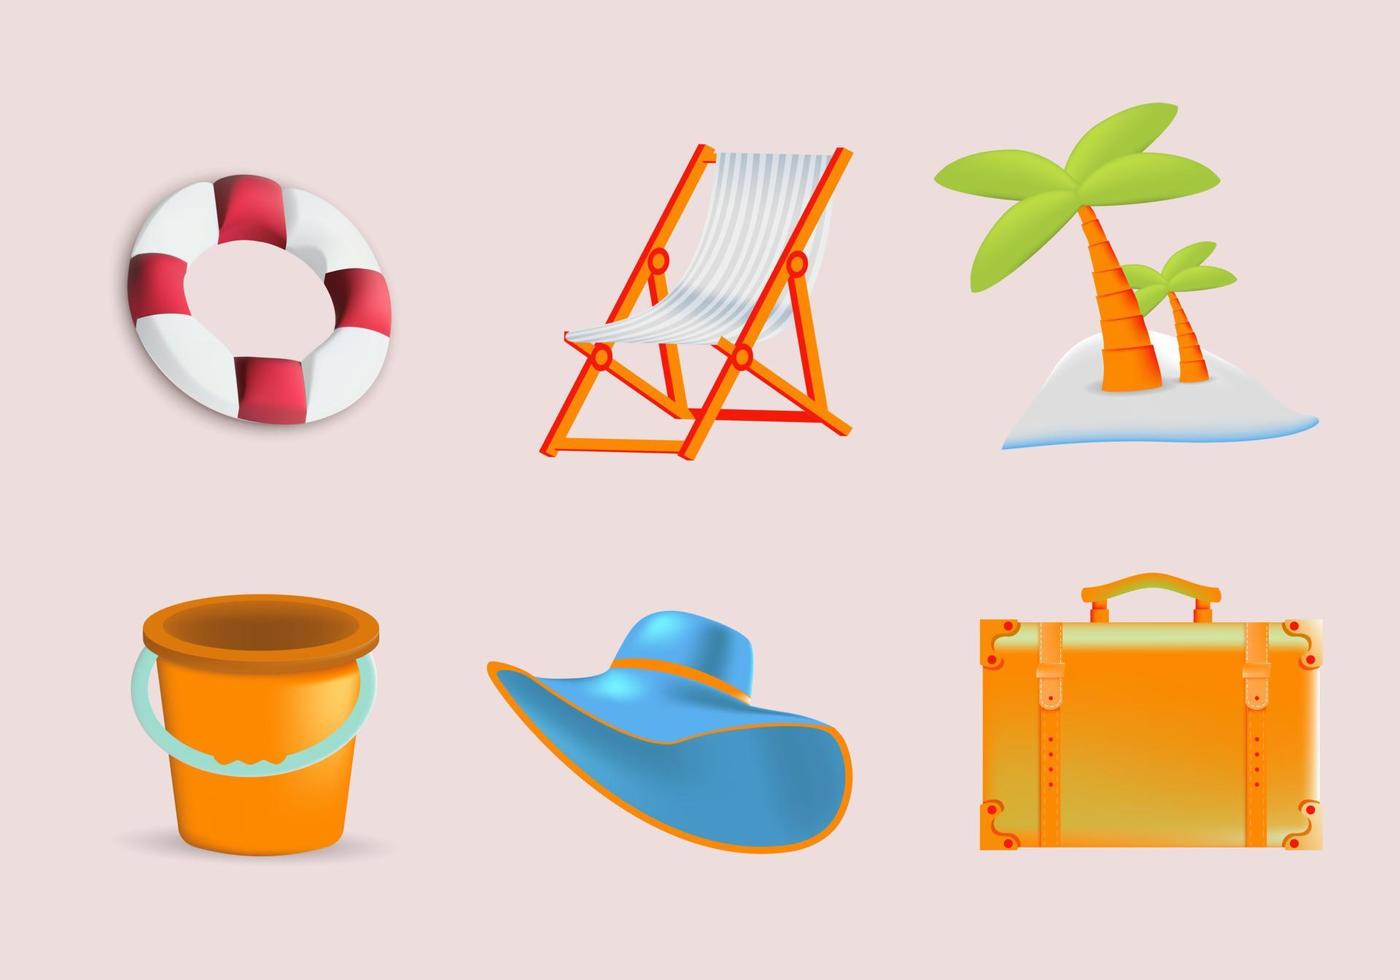 illustrazioni vettoriali di 3d set di oggetti da spiaggia. adatto per il web, il design dell'icona.